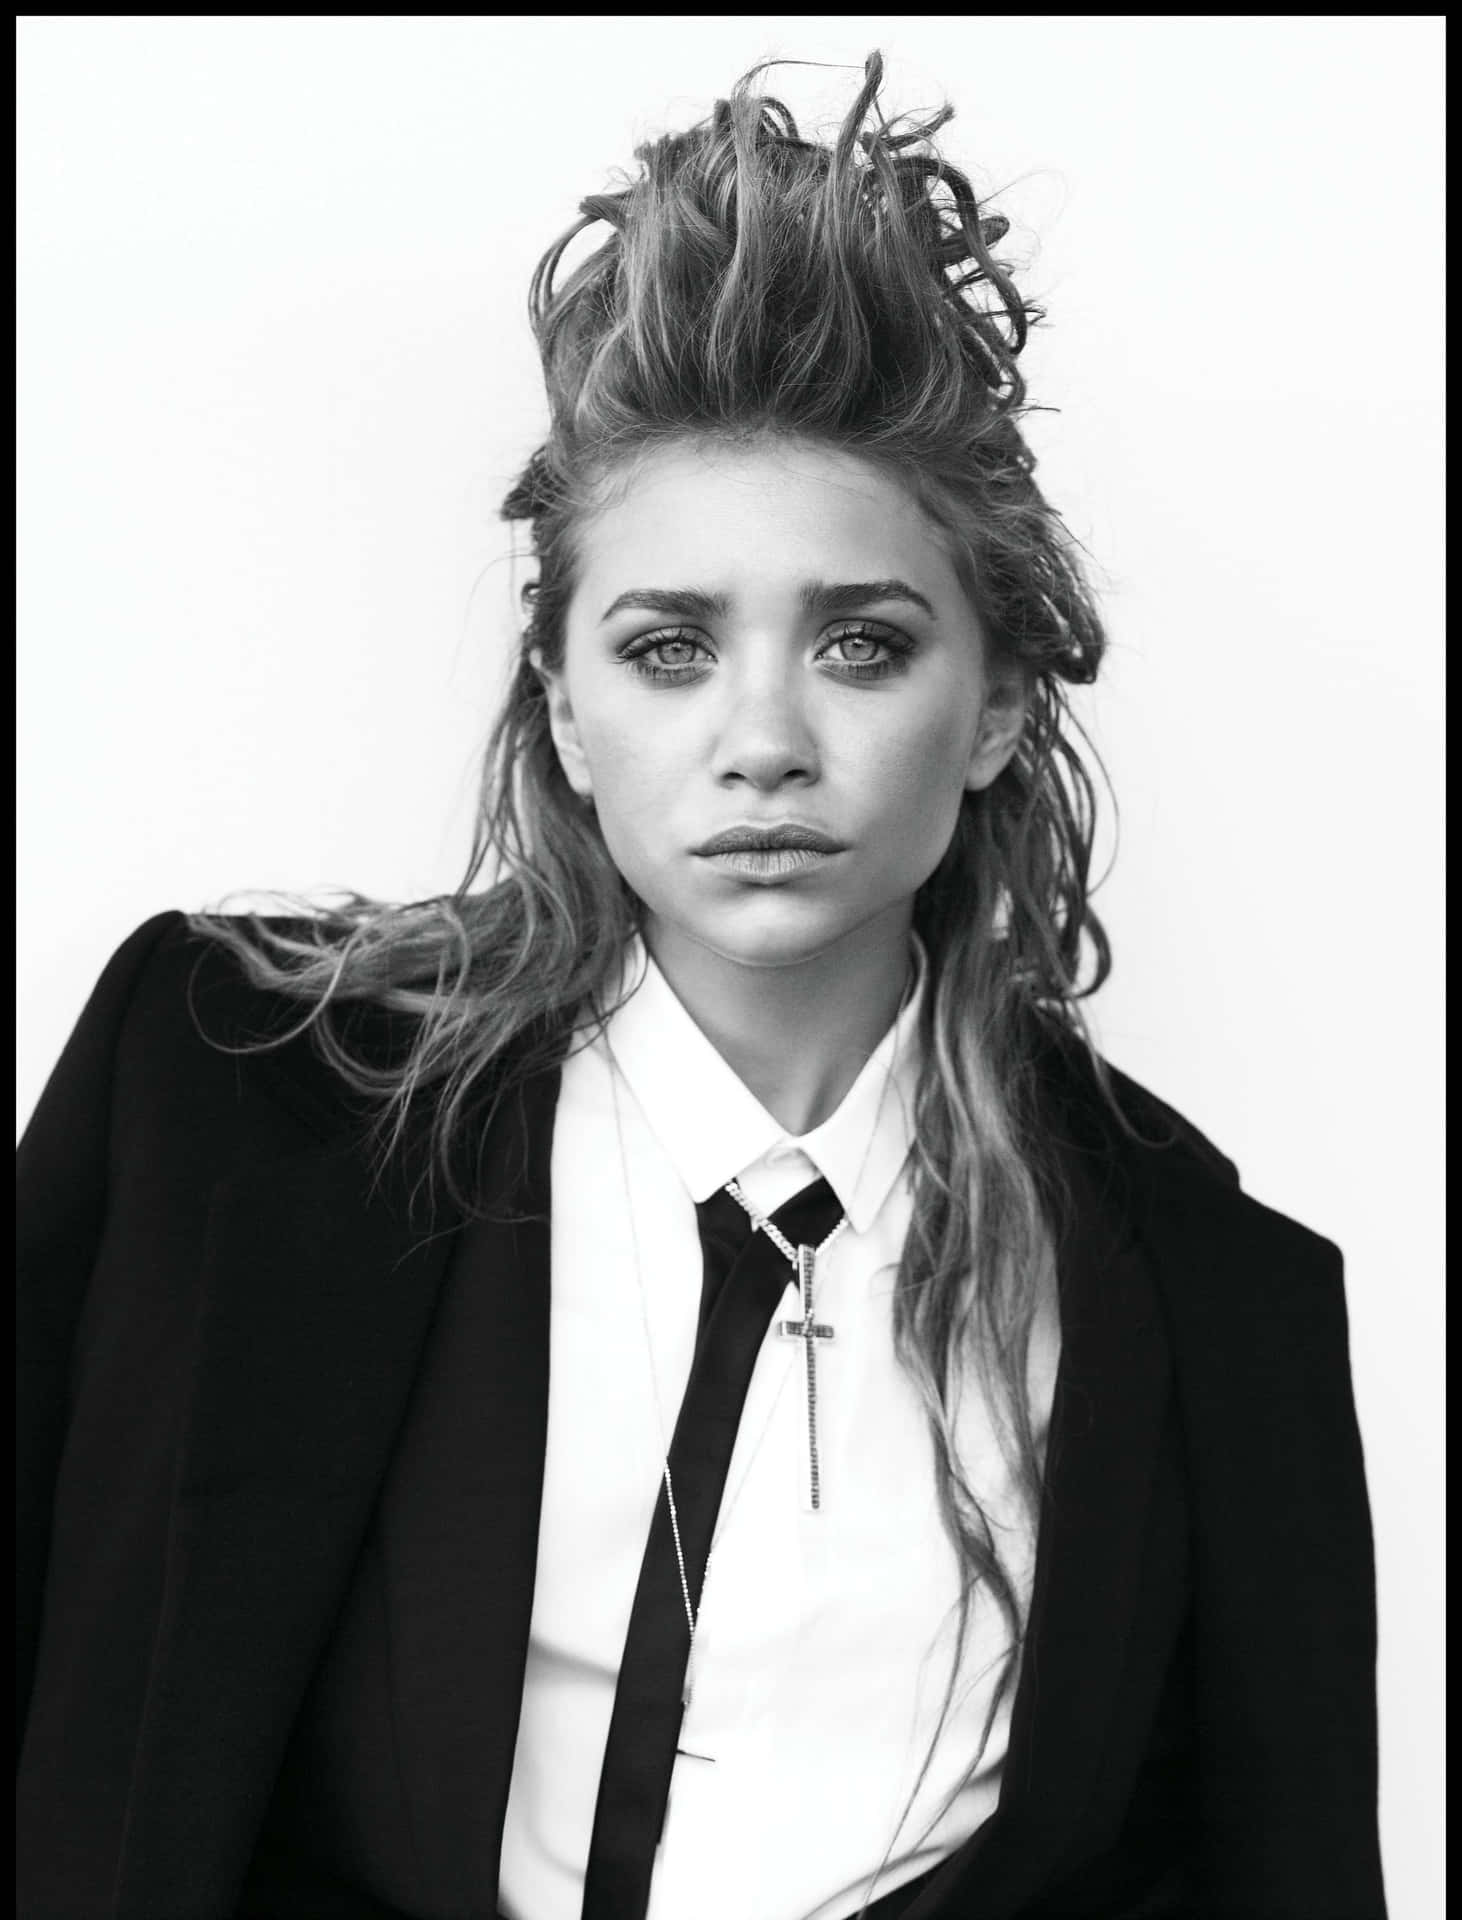 Ashley Olsen Radiating Elegance in Black and White Wallpaper